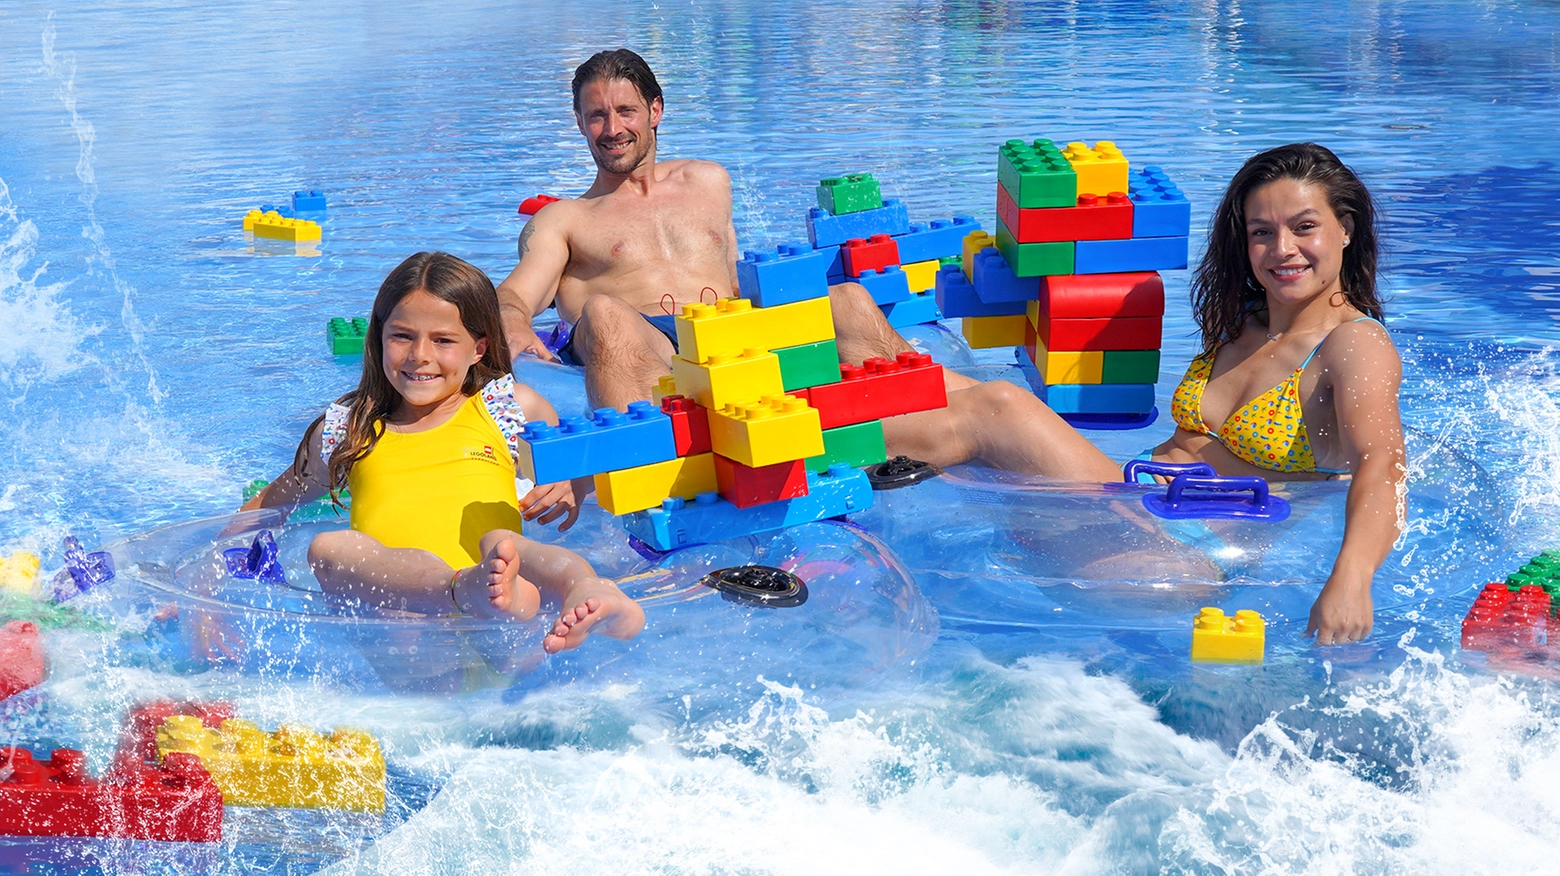 Il debutto del parco acquatico interamente tematizzato Lego, il primo in Europa e il quinto al mondo